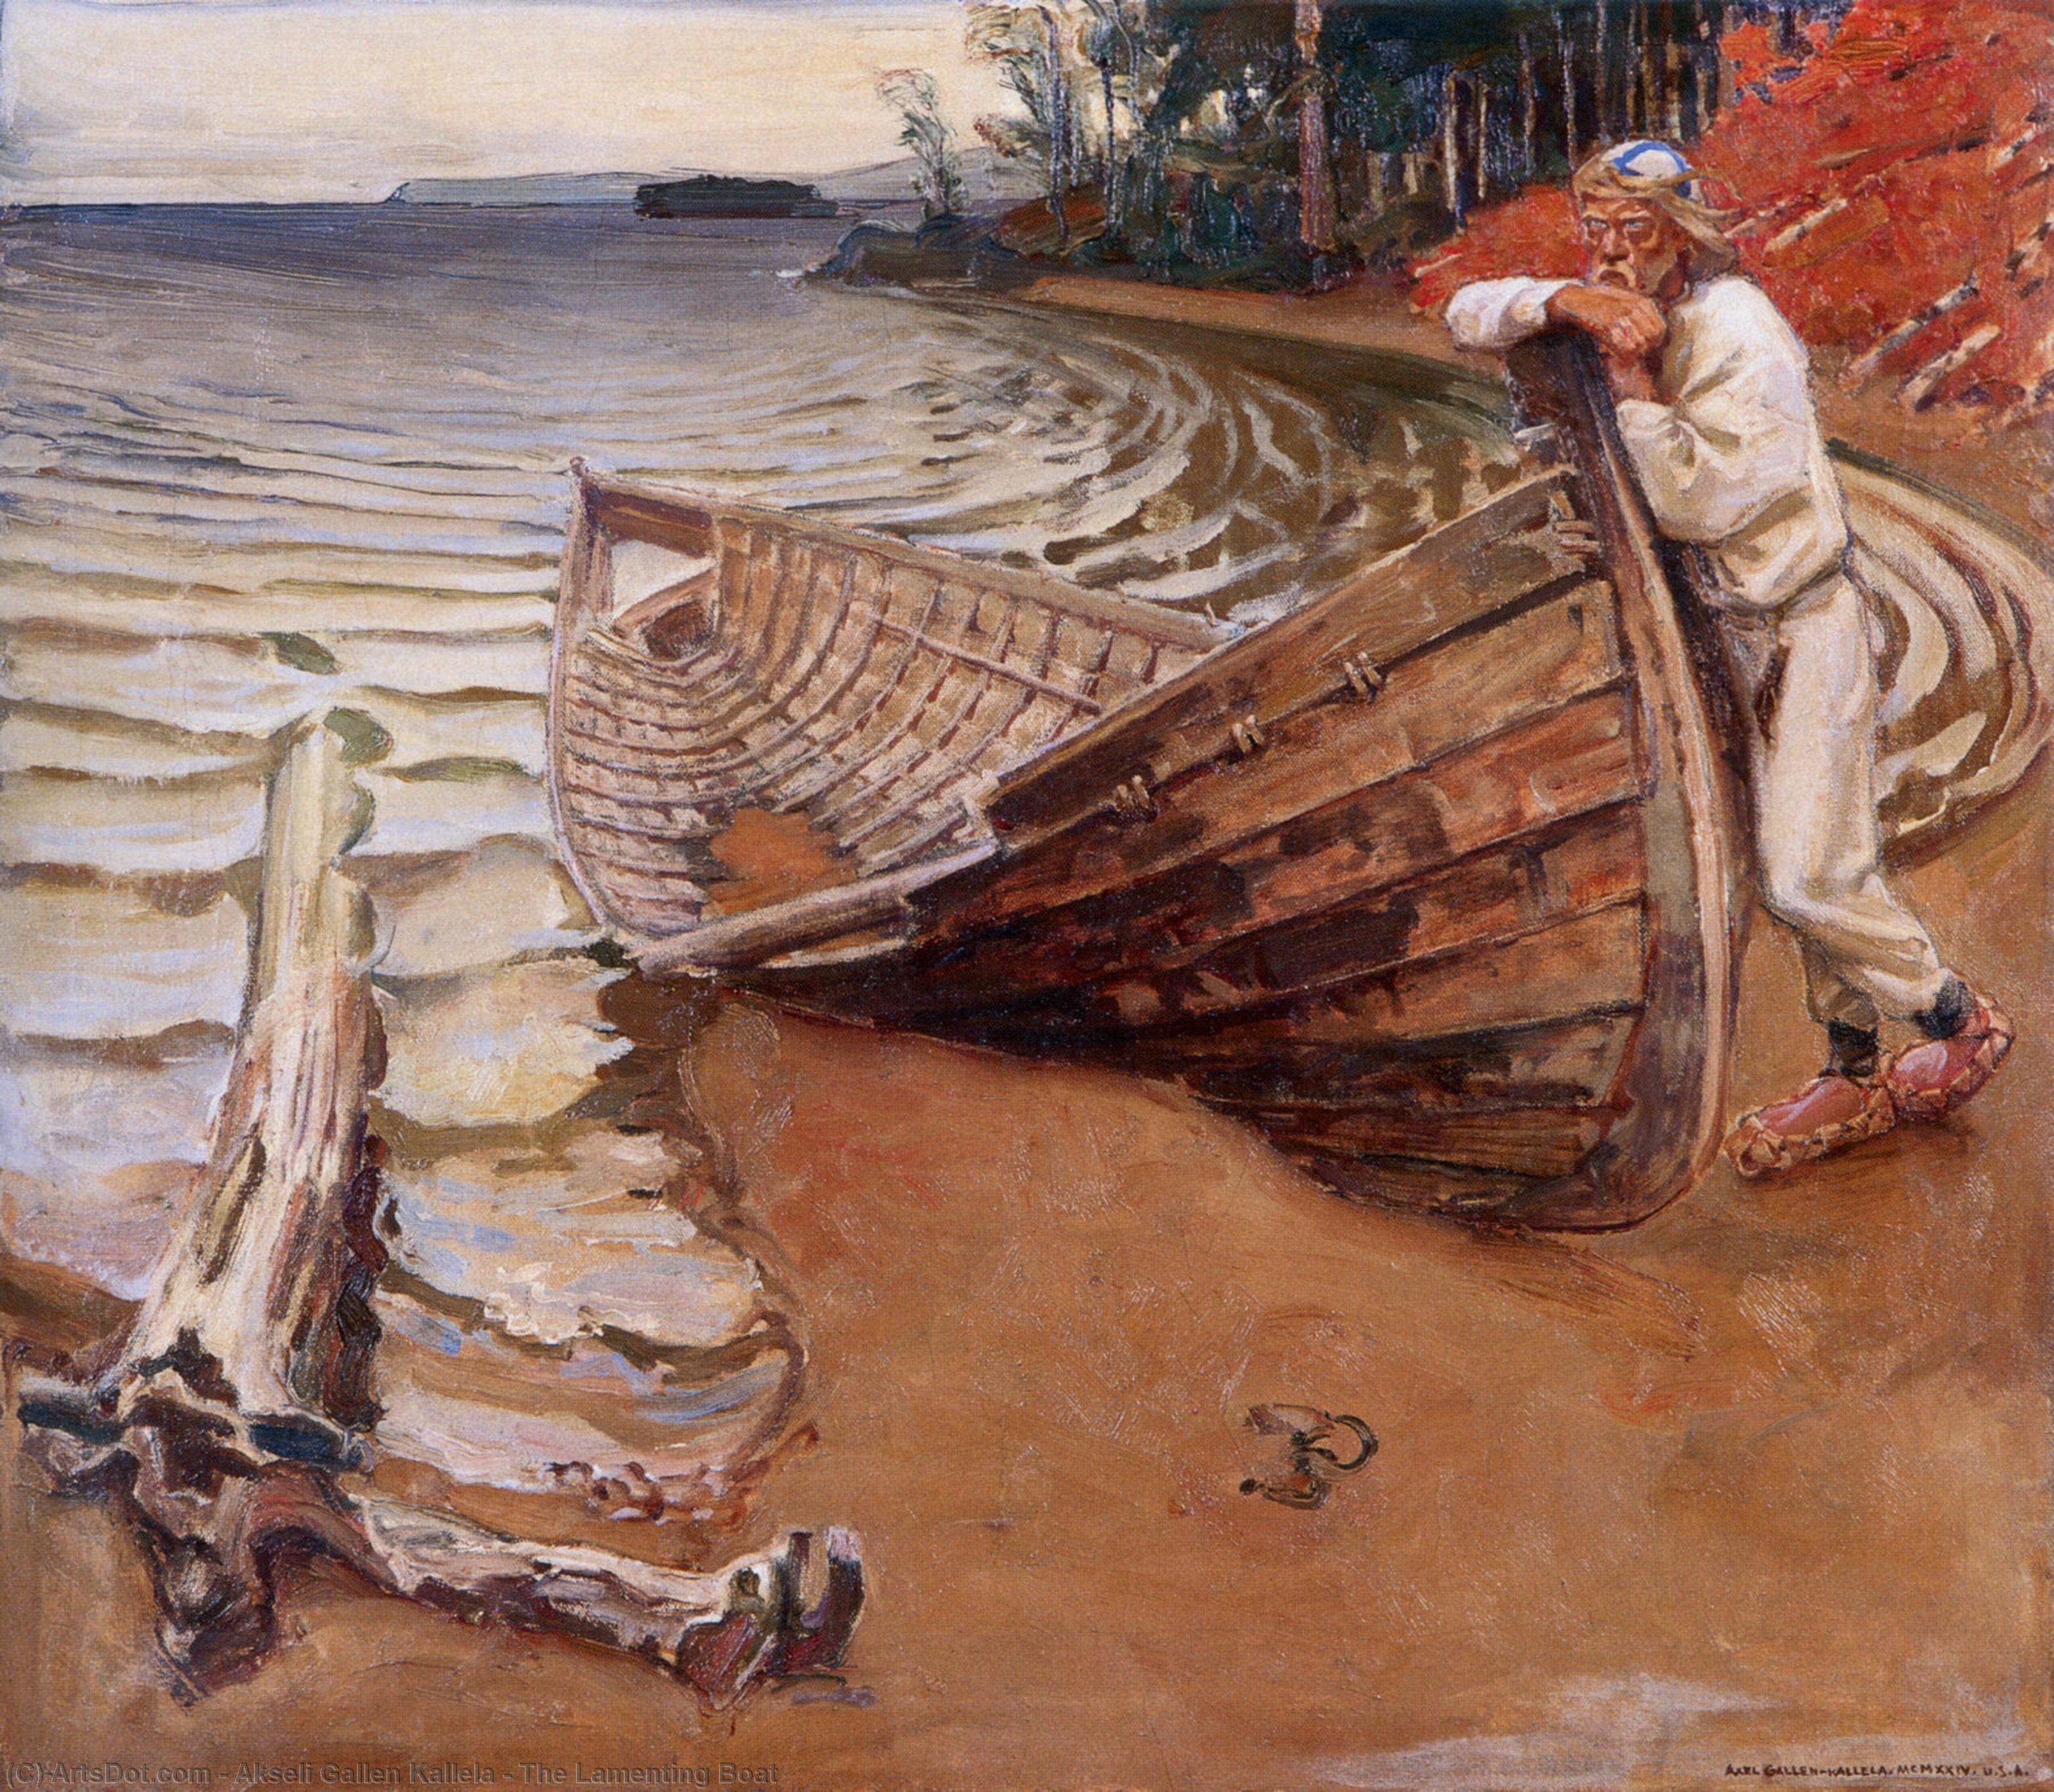 WikiOO.org - 백과 사전 - 회화, 삽화 Akseli Gallen Kallela - The Lamenting Boat